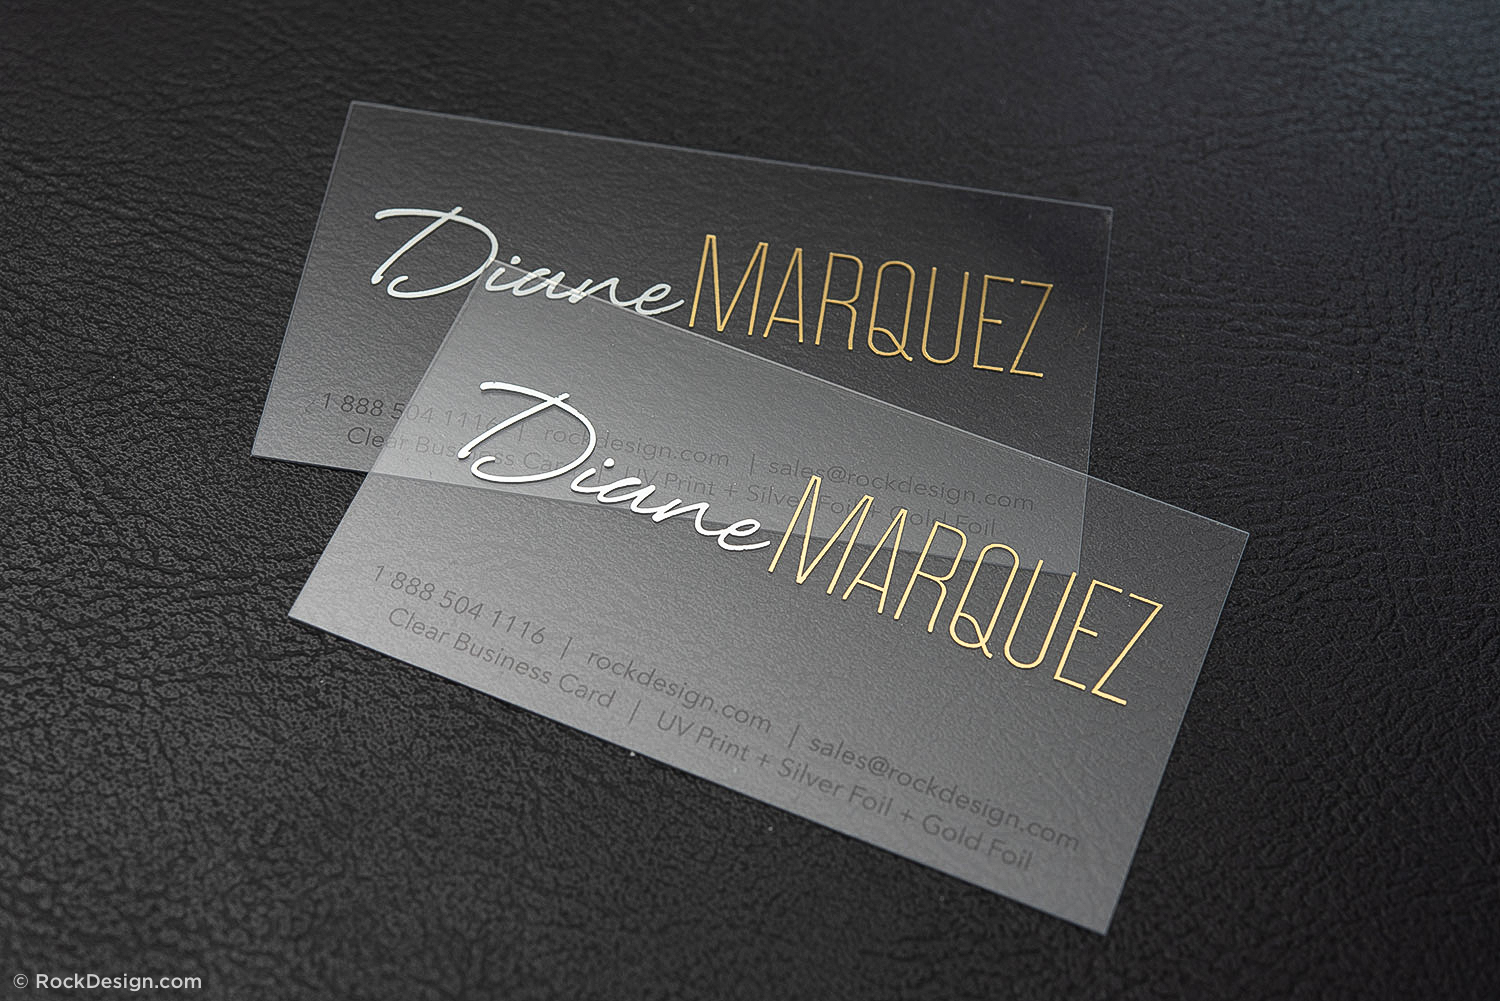 Tåget Mig selv Sæt tabellen op Luxury transparent plastic biz card template with foil stamp - Diane Marquez